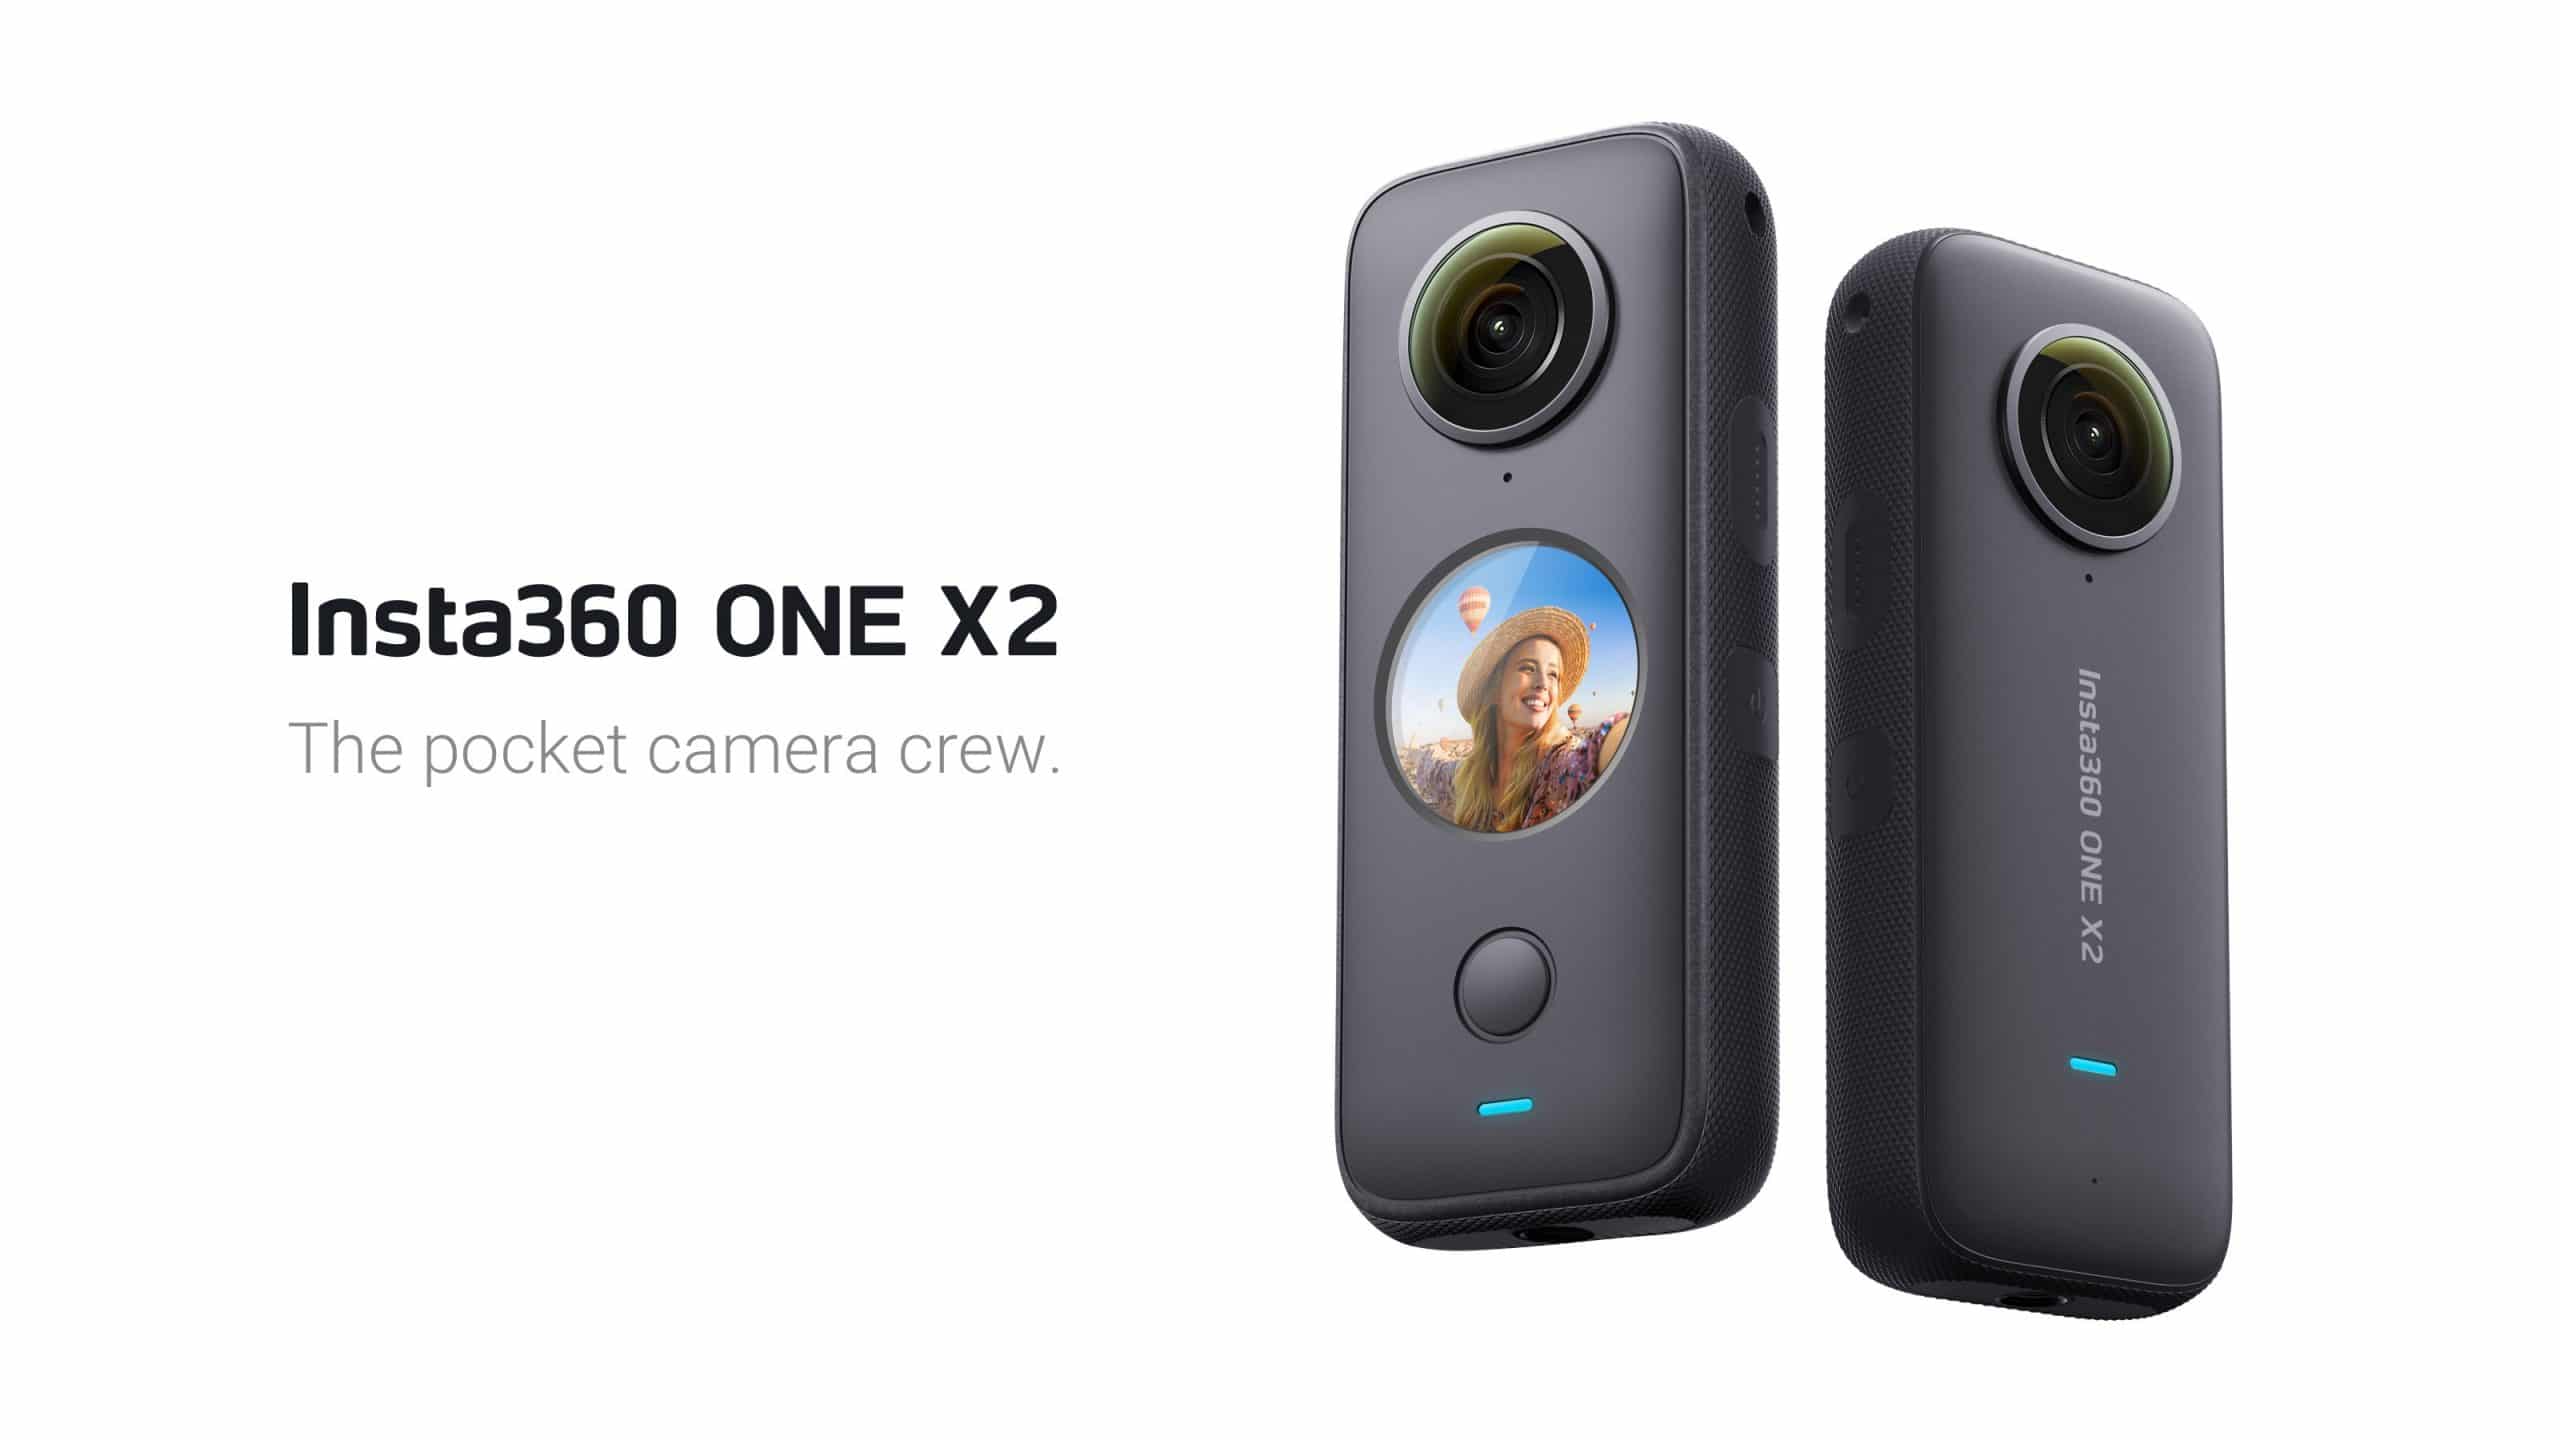 Insta360 ra mắt ONE X2, camera 360 độ nhỏ gọn quay video 5.7K và có cả chống rung hình ảnh